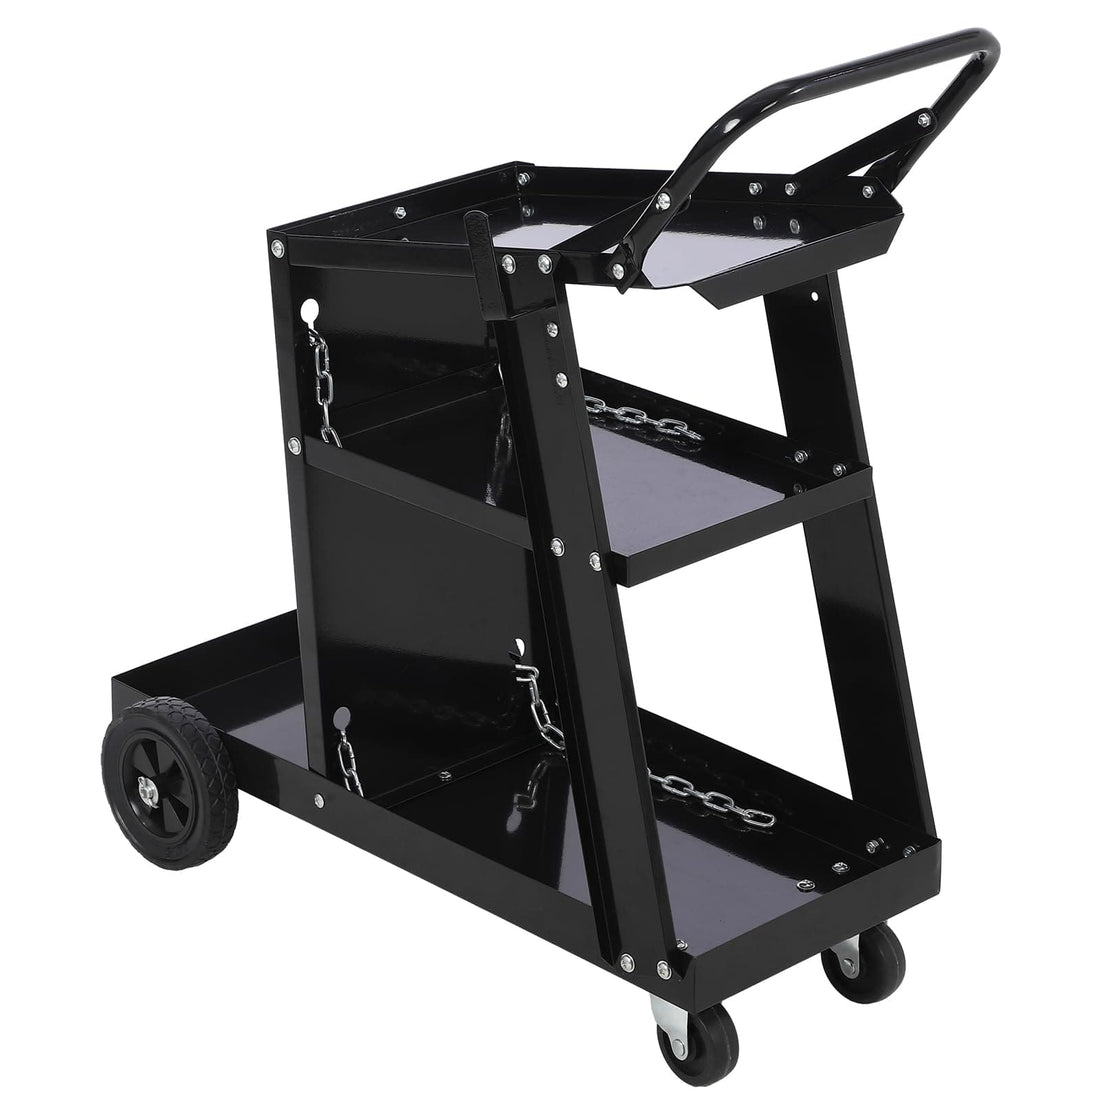 Welding Cart, 220 lbs Welder Cart with Wheels, 3-Tier Welding Carts for TIG MIG Welder and Plasma Cutter